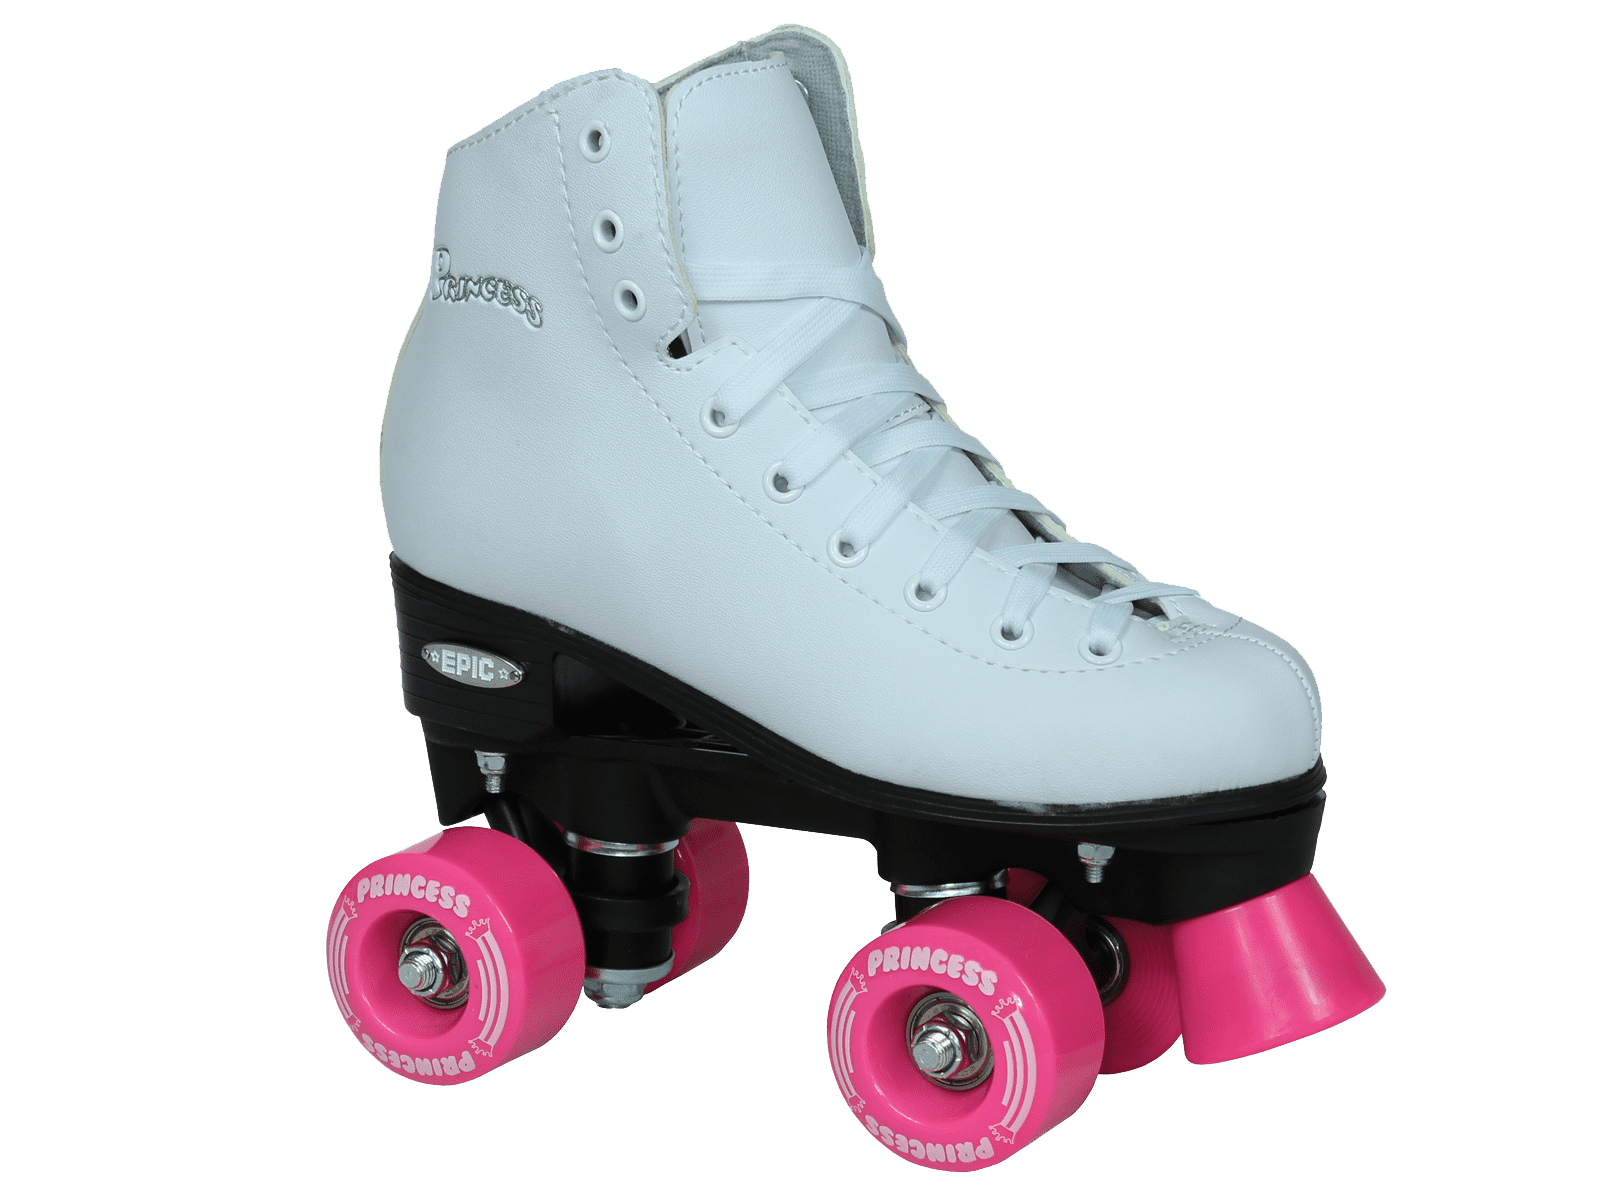 Epic Skates Epic Sparkle Pink Metallic High-Top Quad Roller Skates Package 